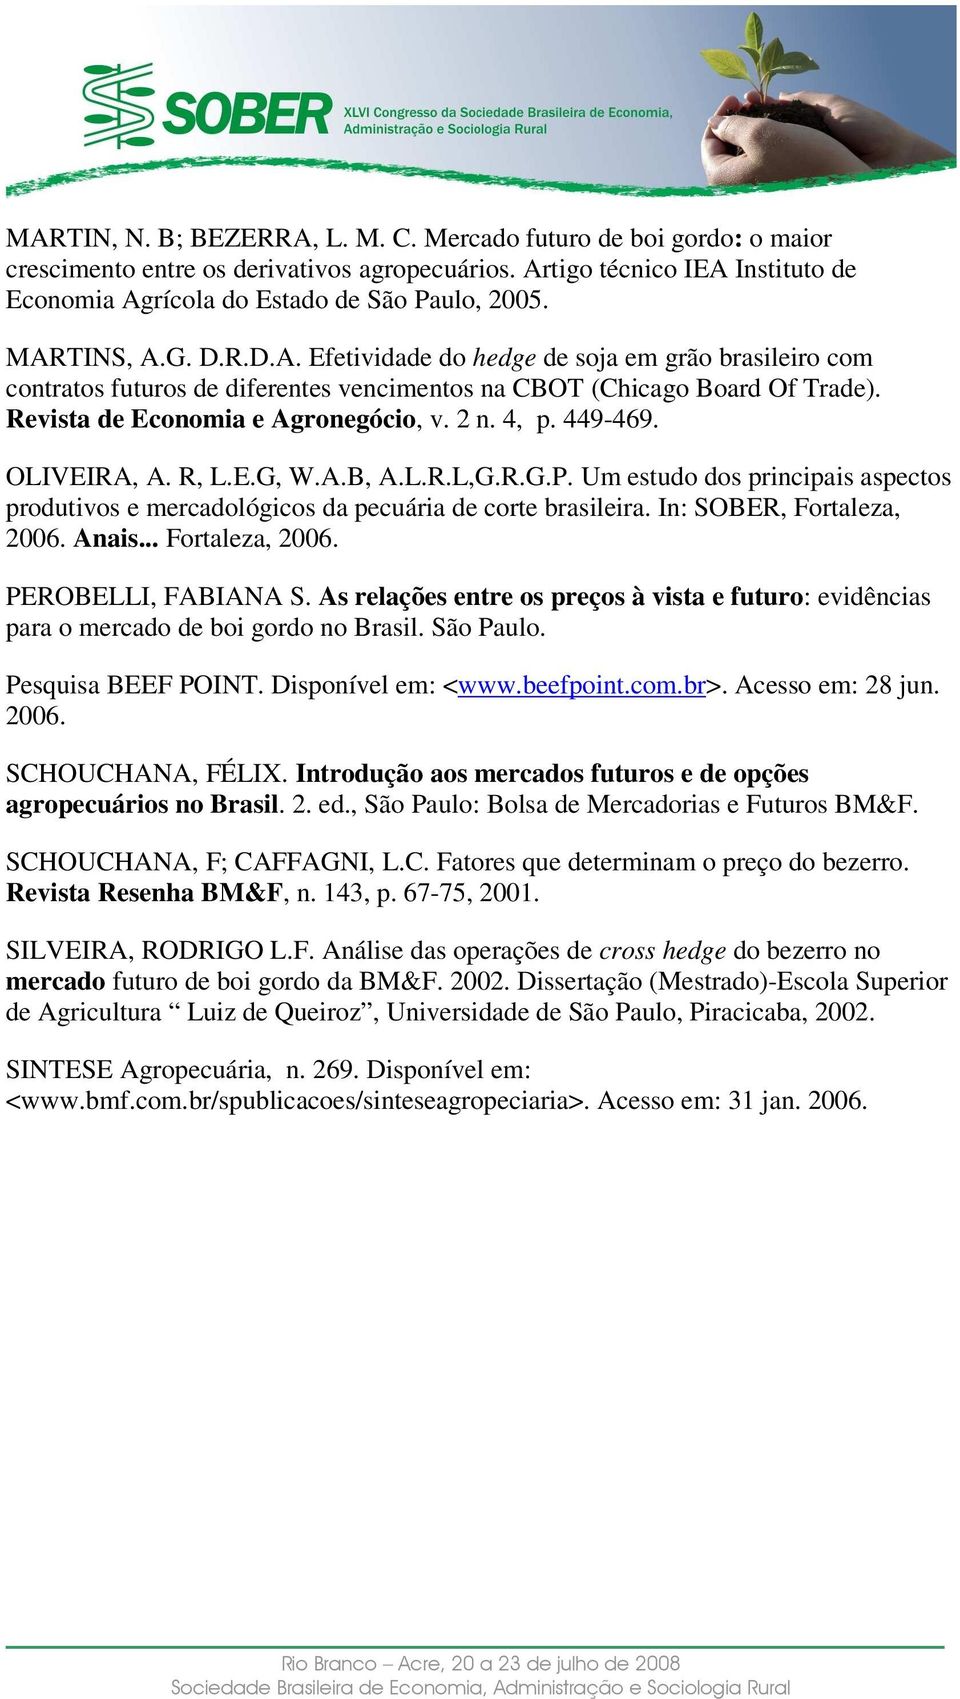 4, p. 449-469. OLIVEIRA, A. R, L.E.G, W.A.B, A.L.R.L,G.R.G.P. Um estudo dos principais aspectos produtivos e mercadológicos da pecuária de corte brasileira. In: SOBER, Fortaleza, 2006. Anais.